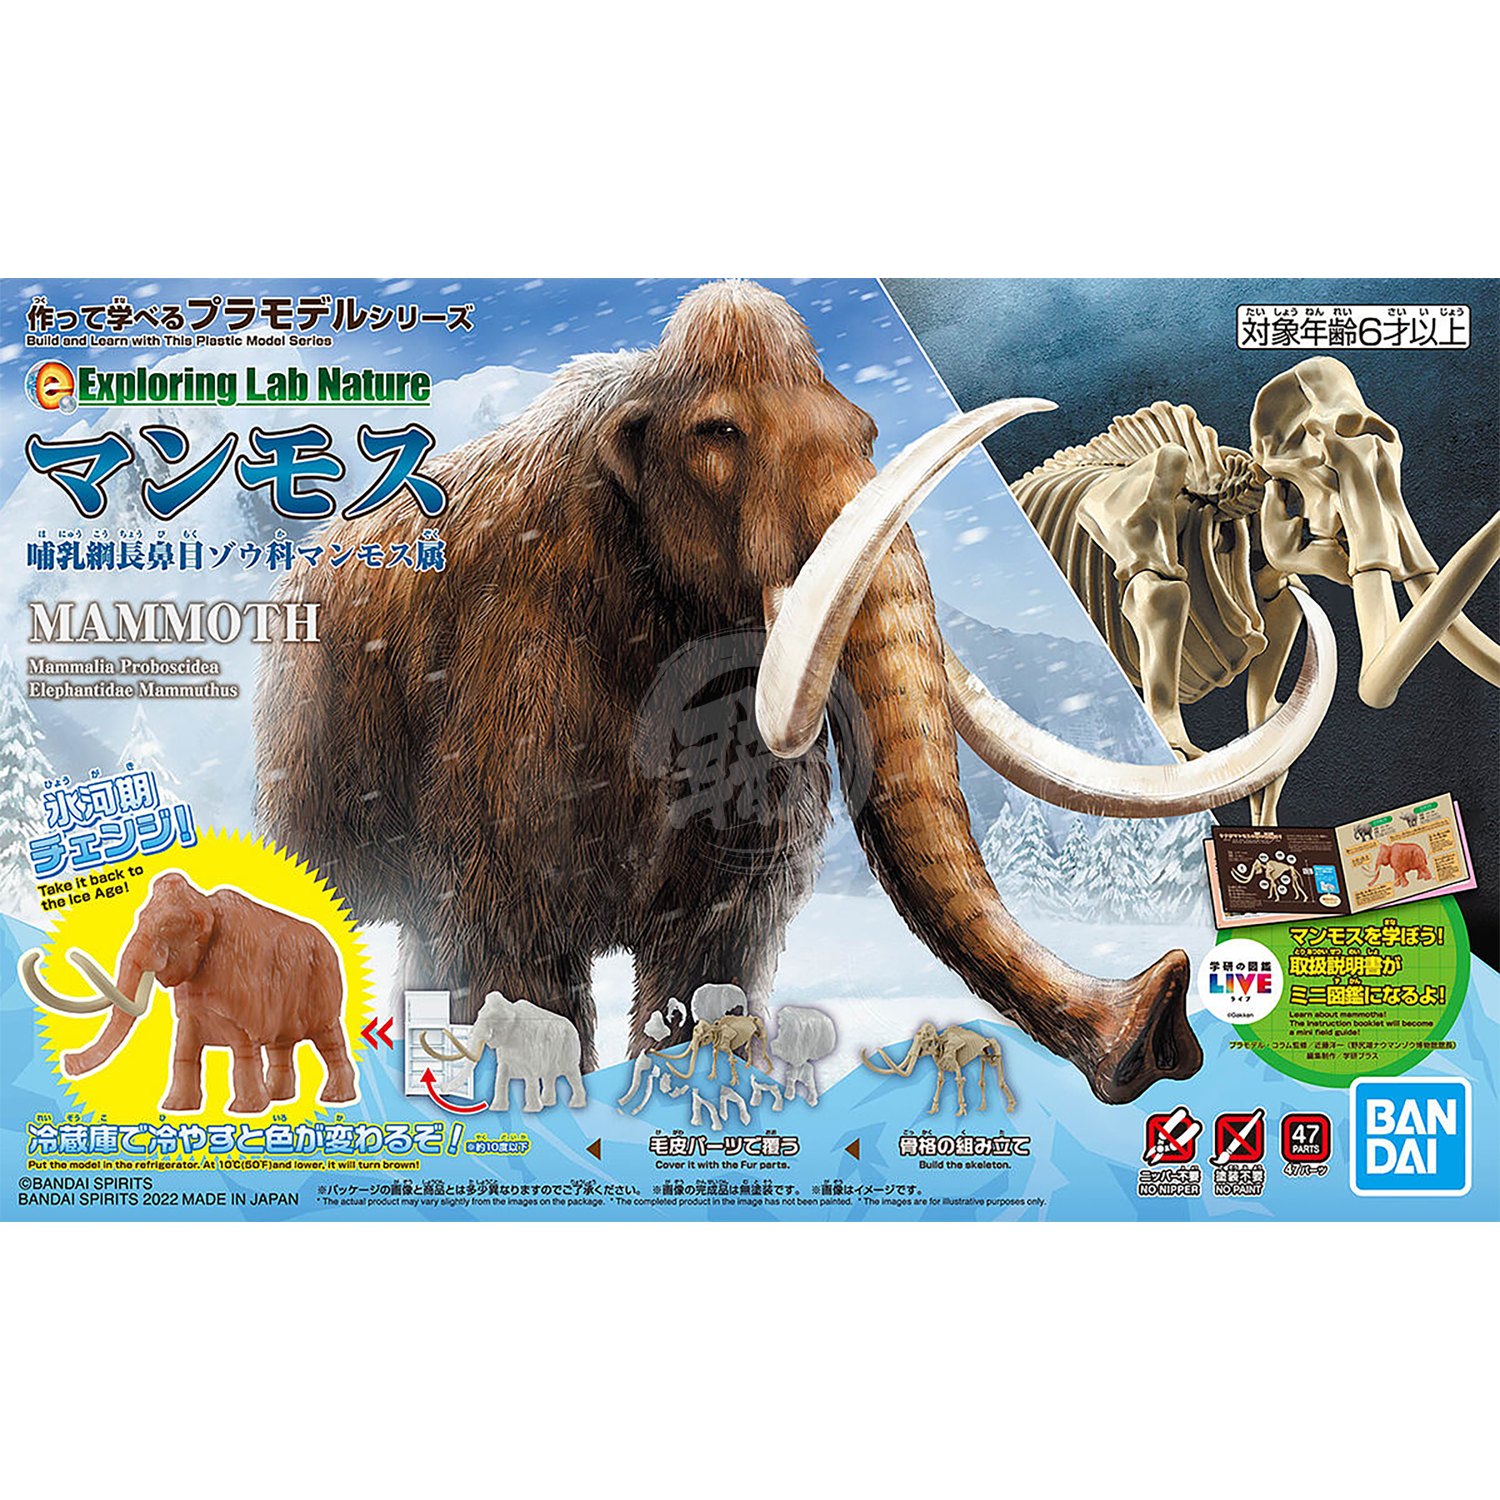 Exploring Lab Nature Mammoth - ShokuninGunpla